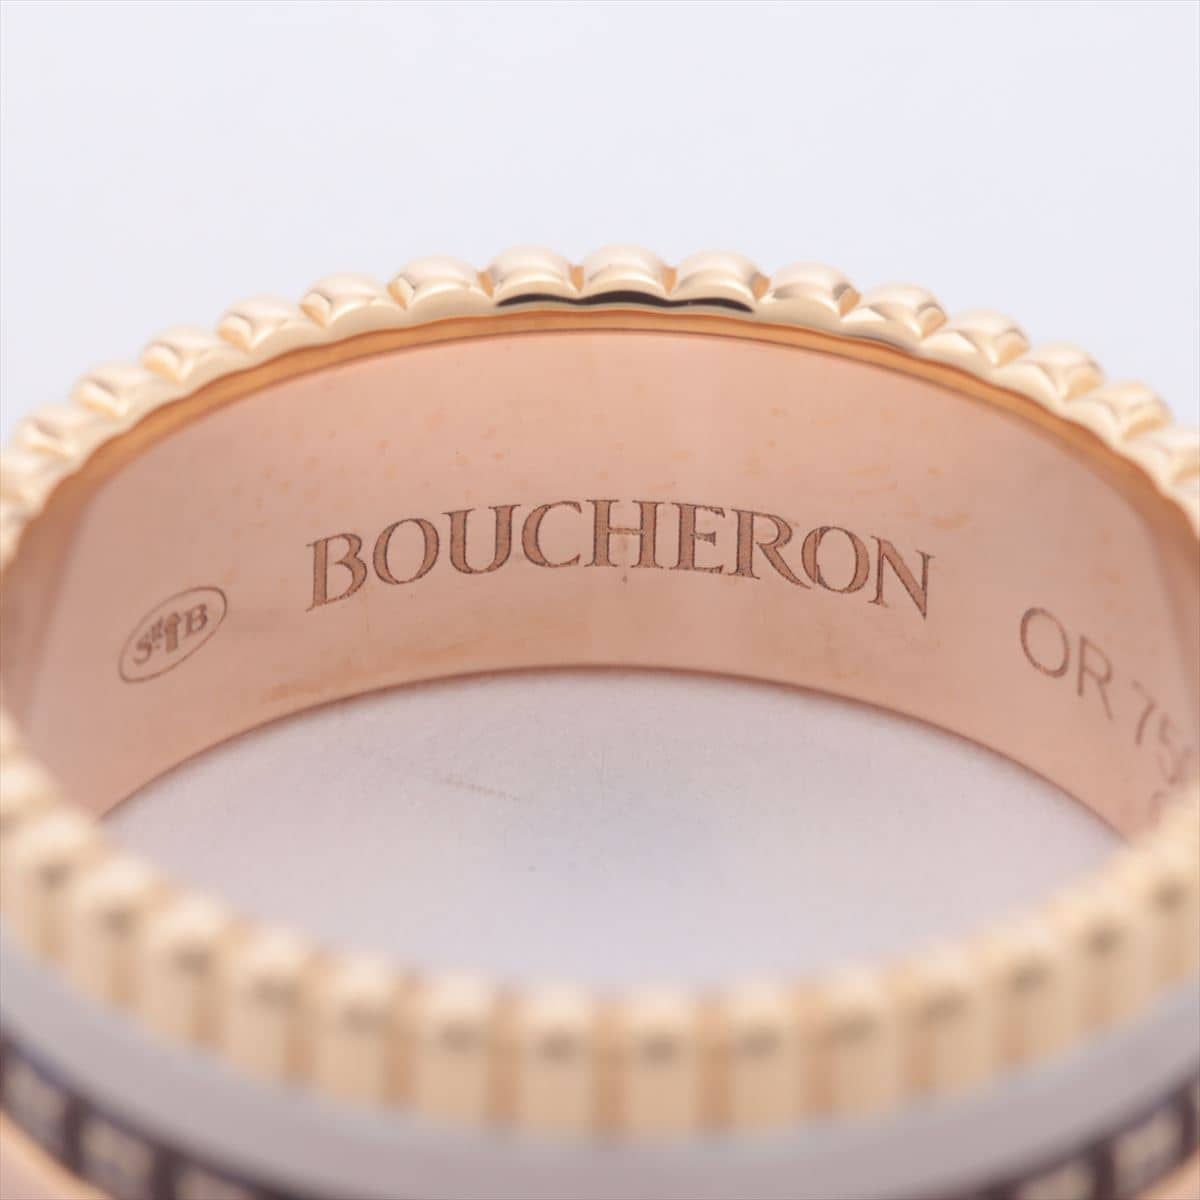 Boucheron Quatre small rings 750 YG×PG×WG 6.9g 51